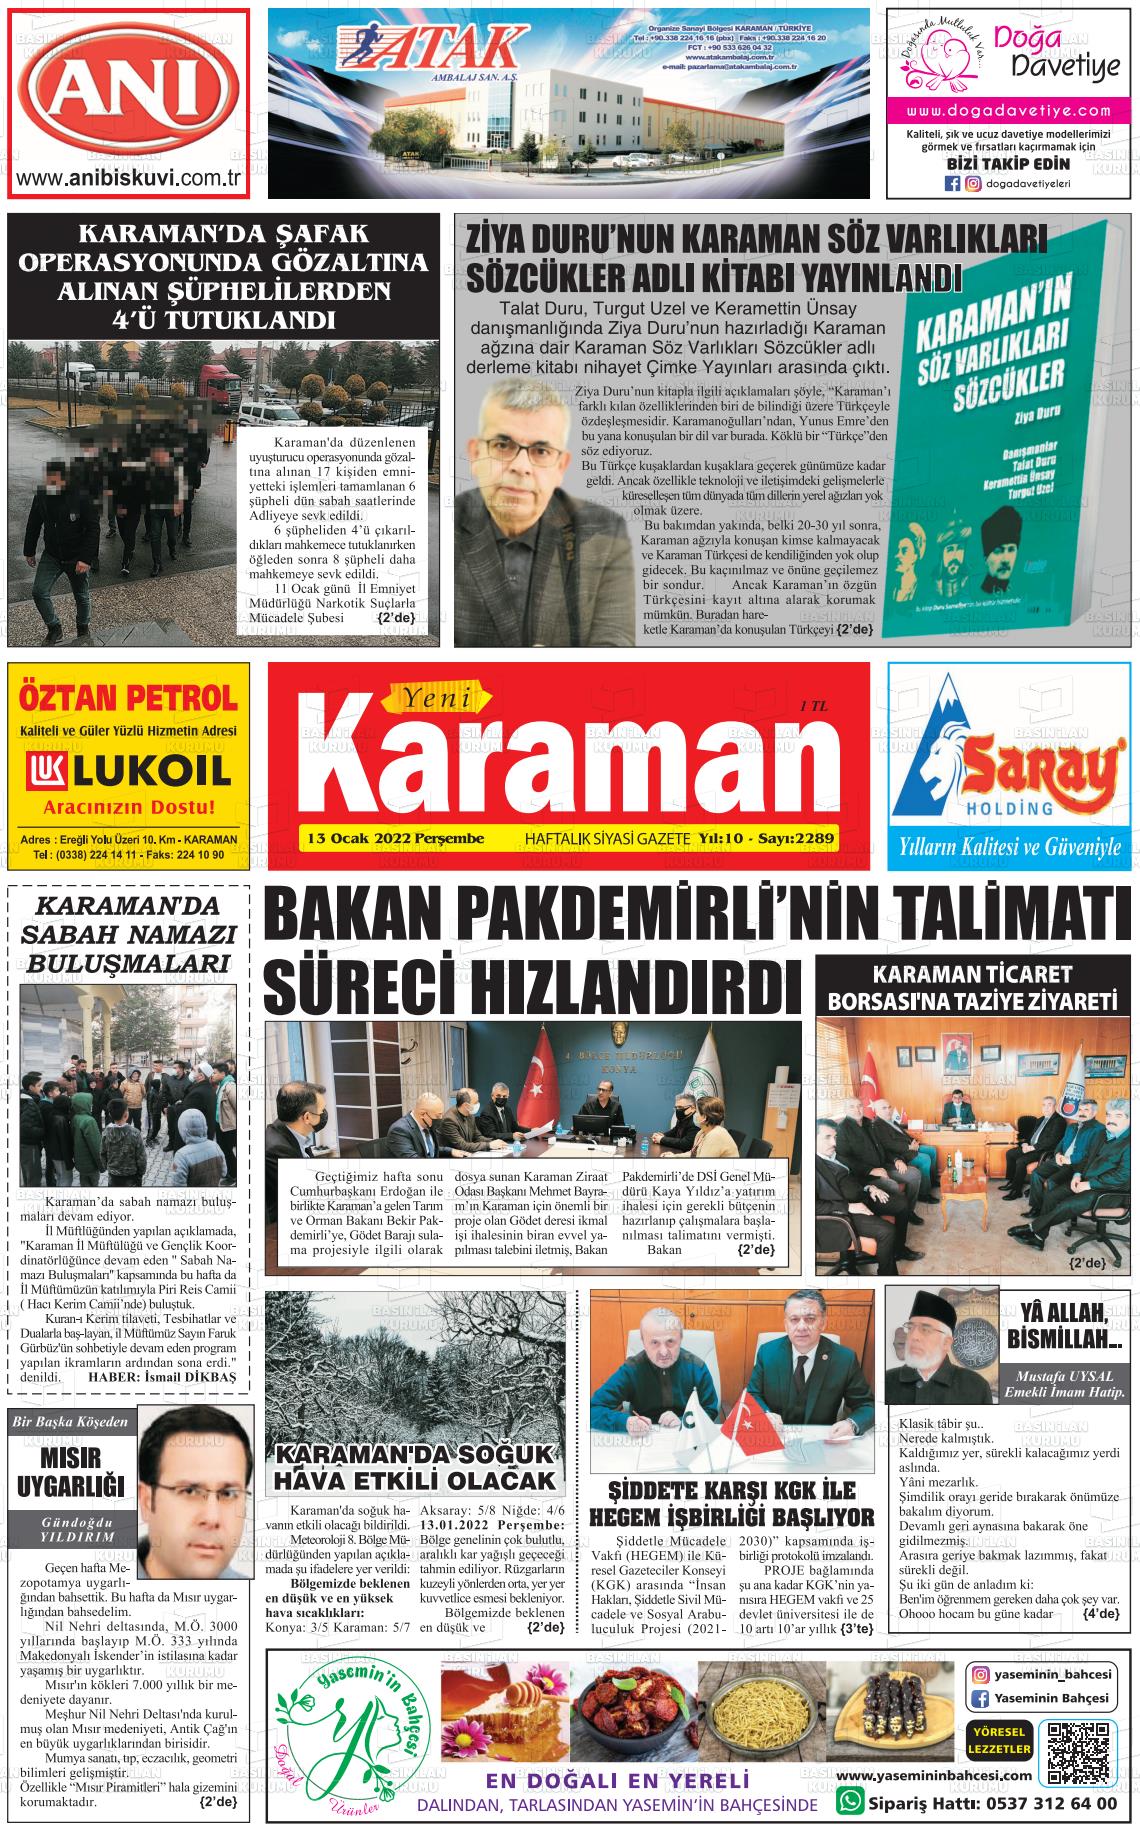 13 Ocak 2022 Yeni Karaman Gazete Manşeti